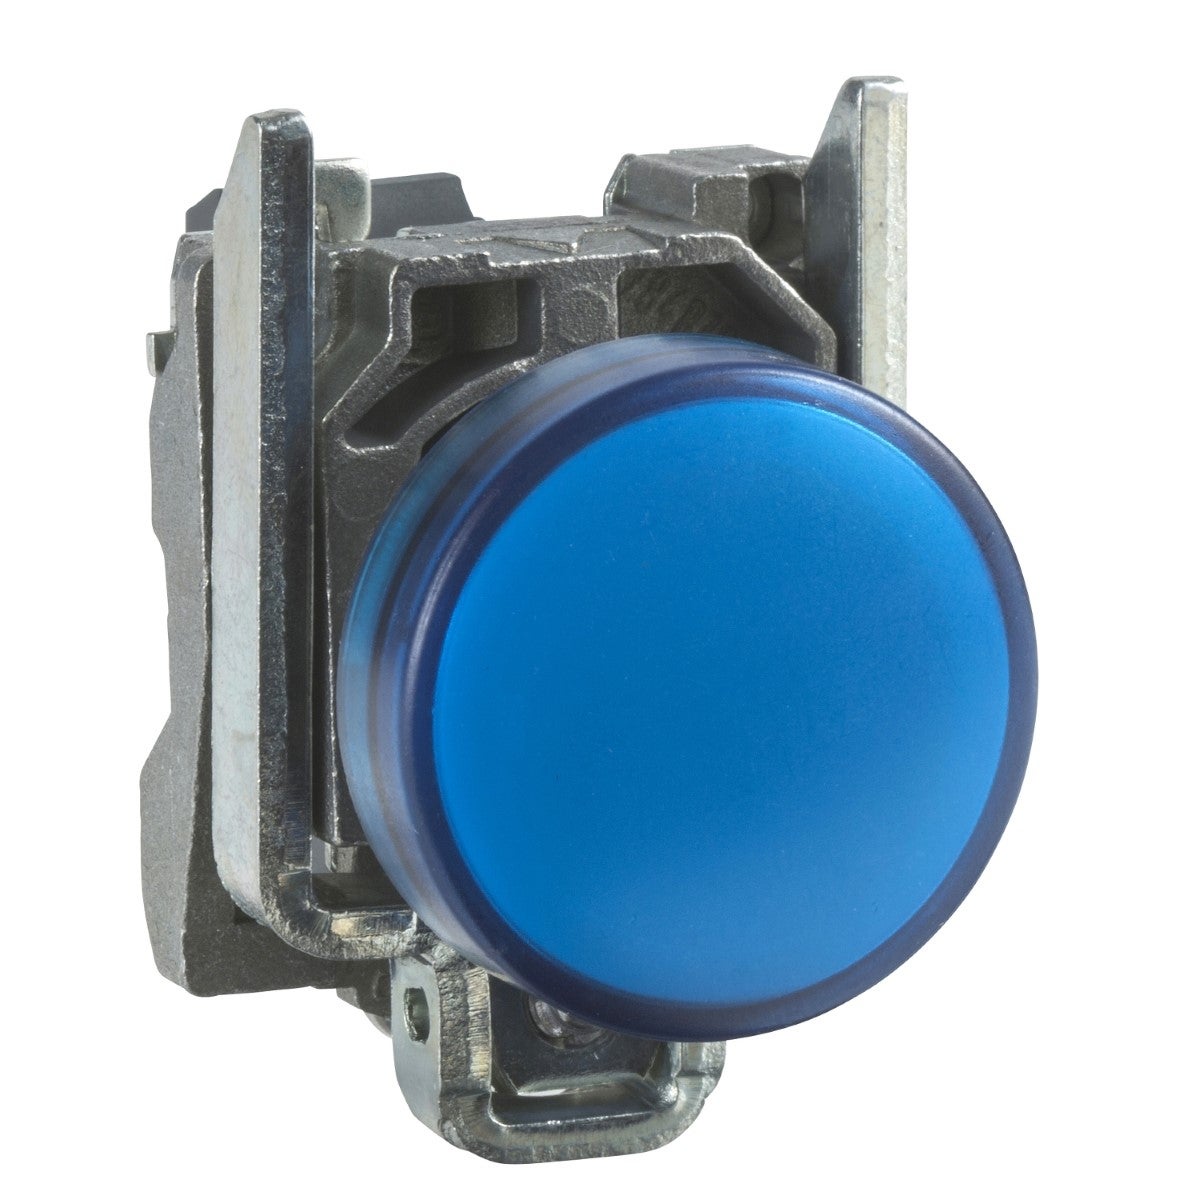 Pilot light, metal, blue, Ã˜22, plain lens with integral LED, 24 V AC/DC